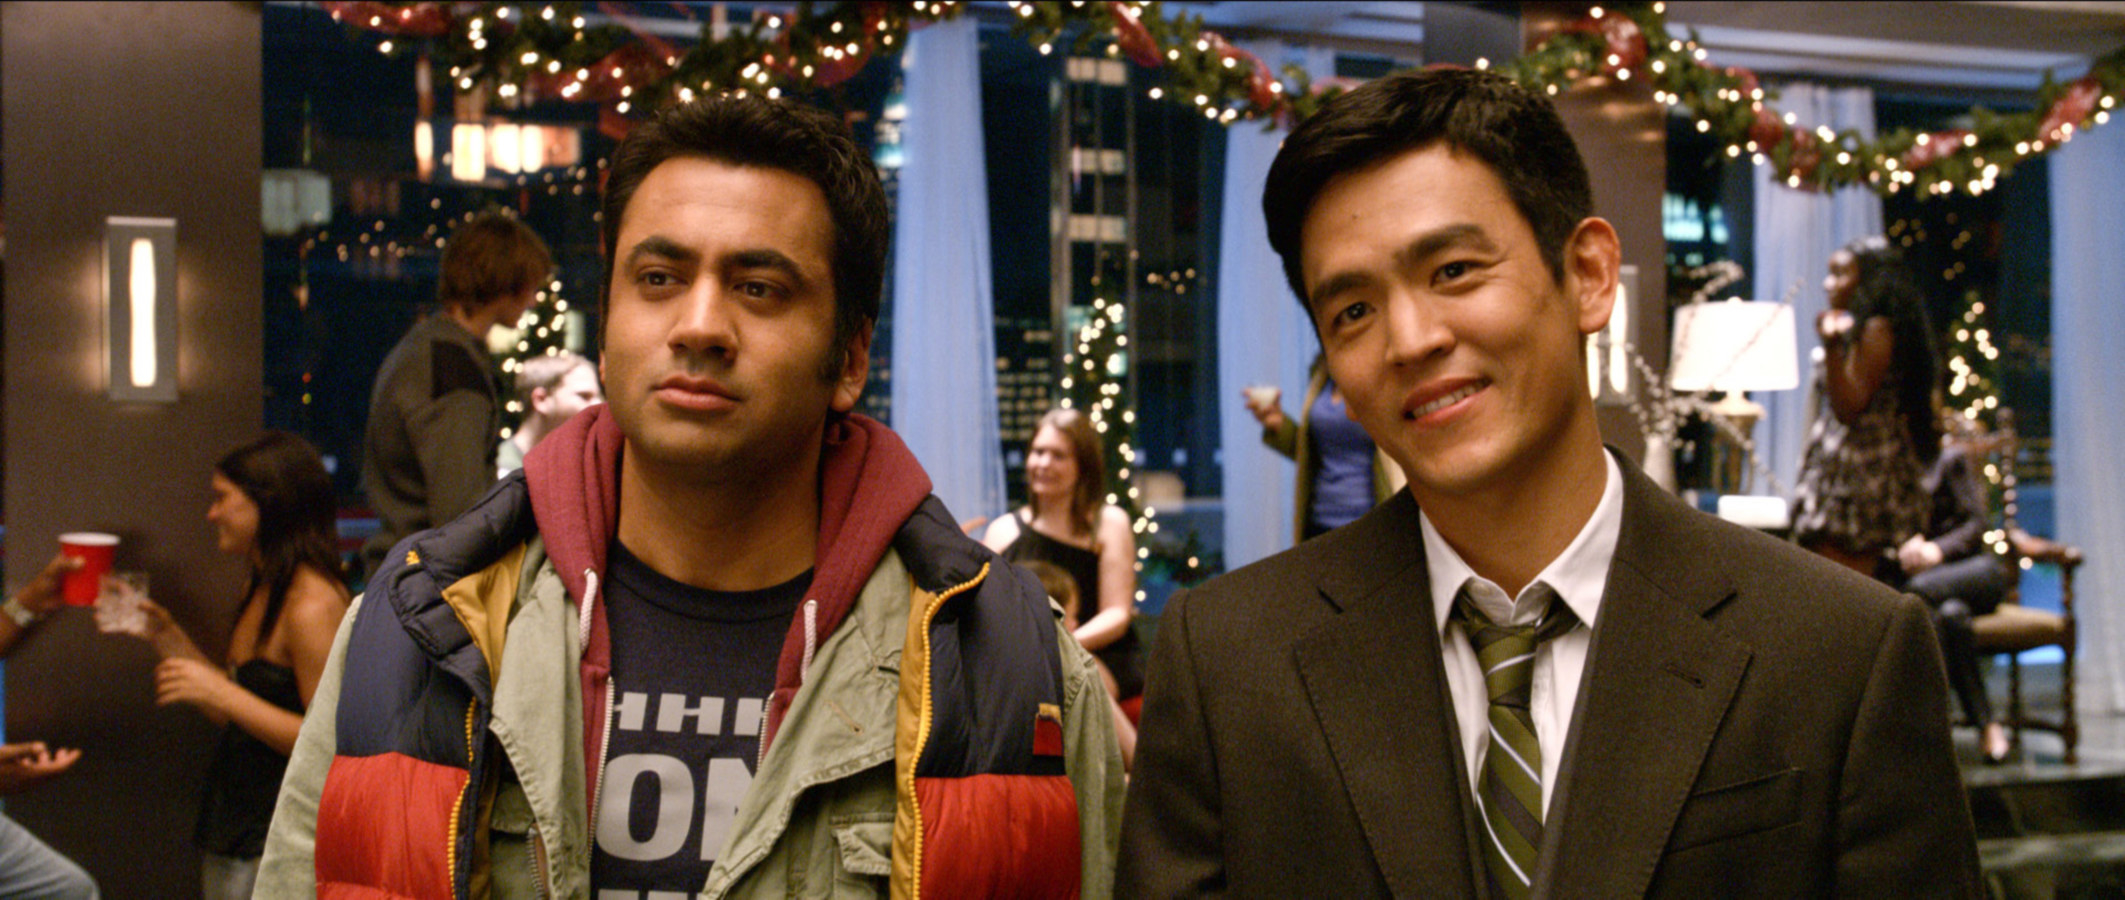 Harold and Kumar at a Christmas party